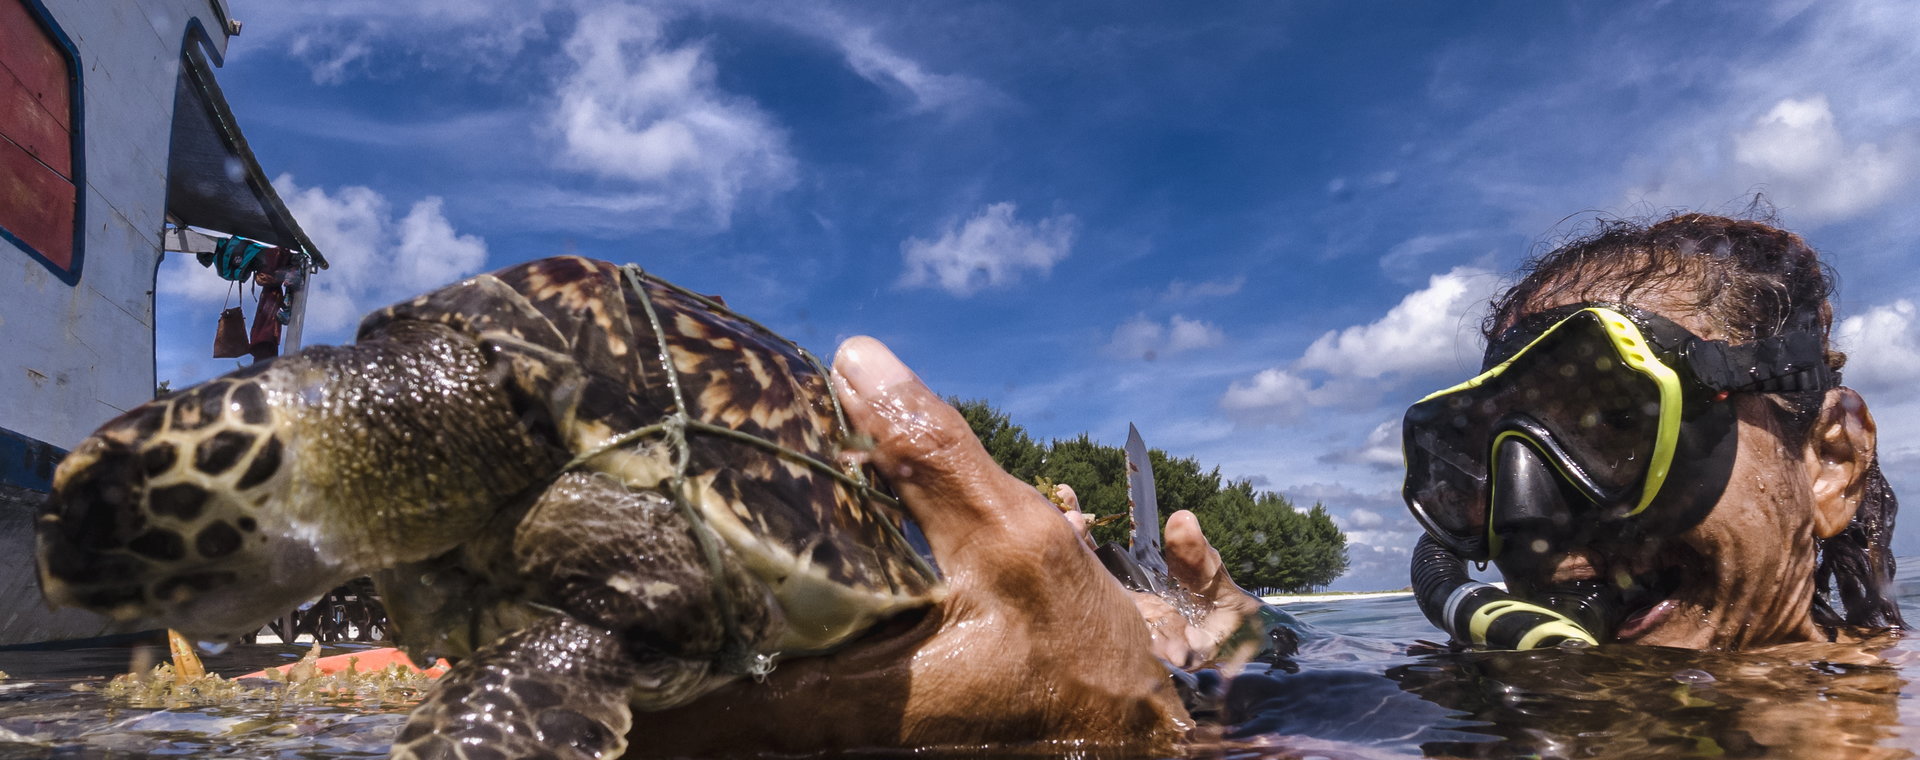 Wolontariusz ratuje żółwia szylkretowego (Eretmochelys imbricata), który zaplątał się w pozostawioną w oceanie sieć rybacka. Wyspy Karimunjawa 12 czerwca 2022 r., Indonezja. 